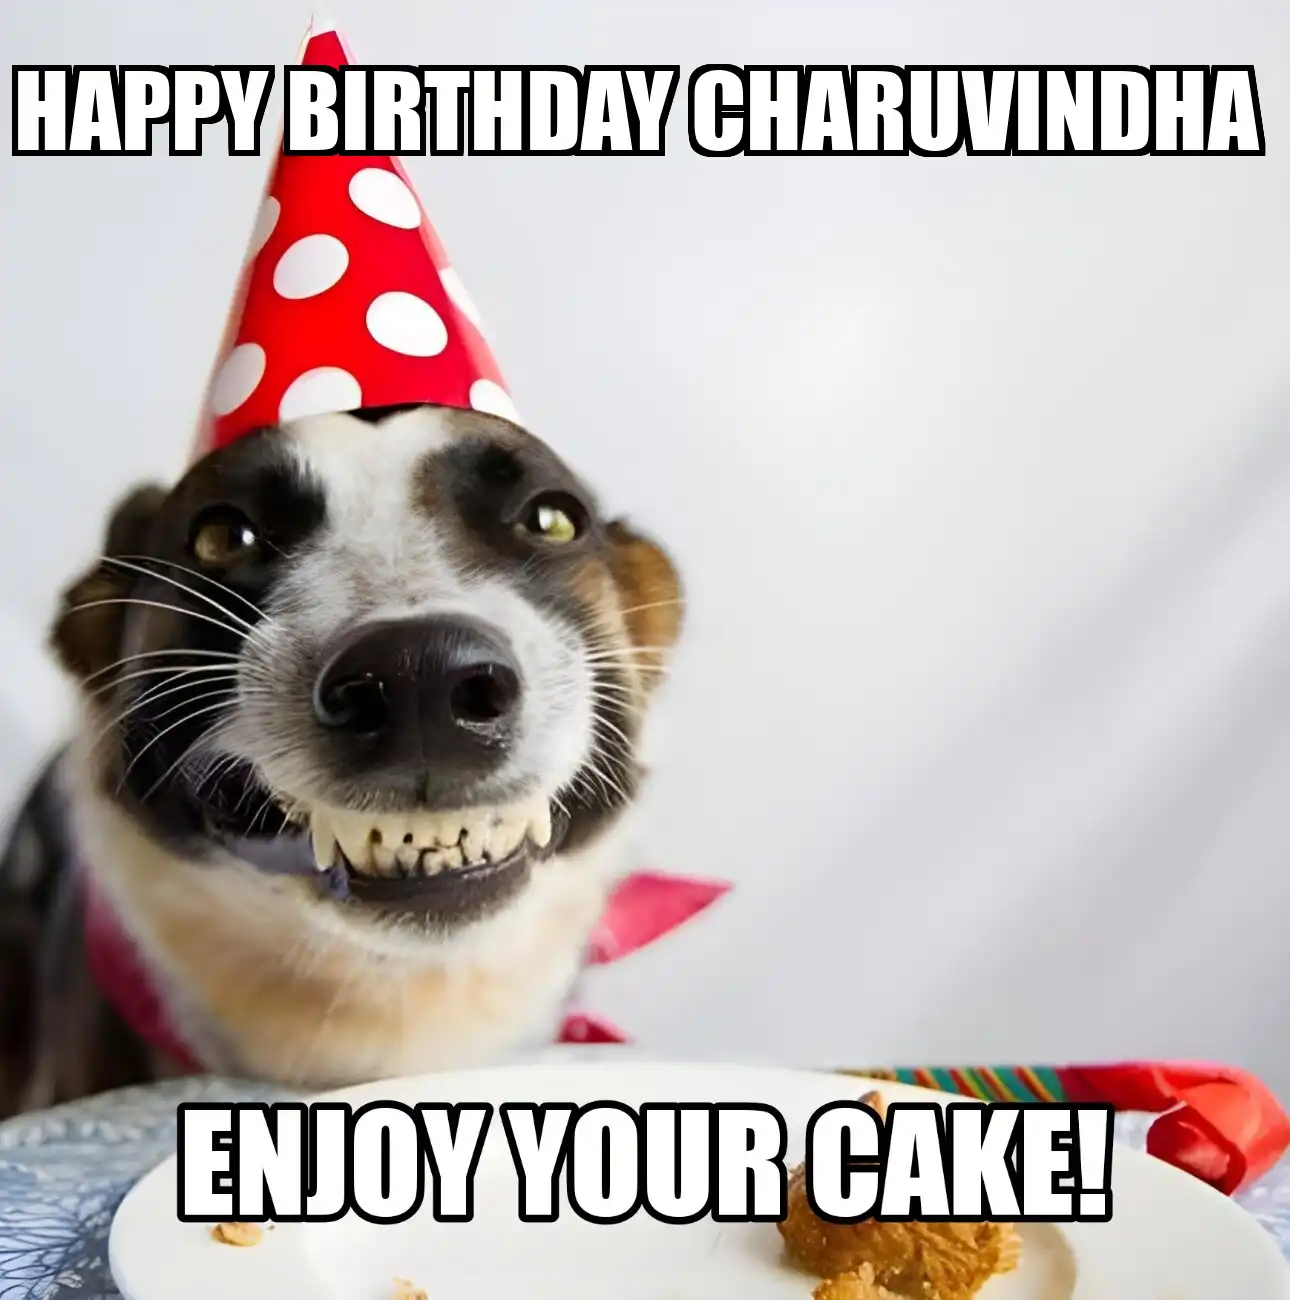 Happy Birthday Charuvindha Enjoy Your Cake Dog Meme